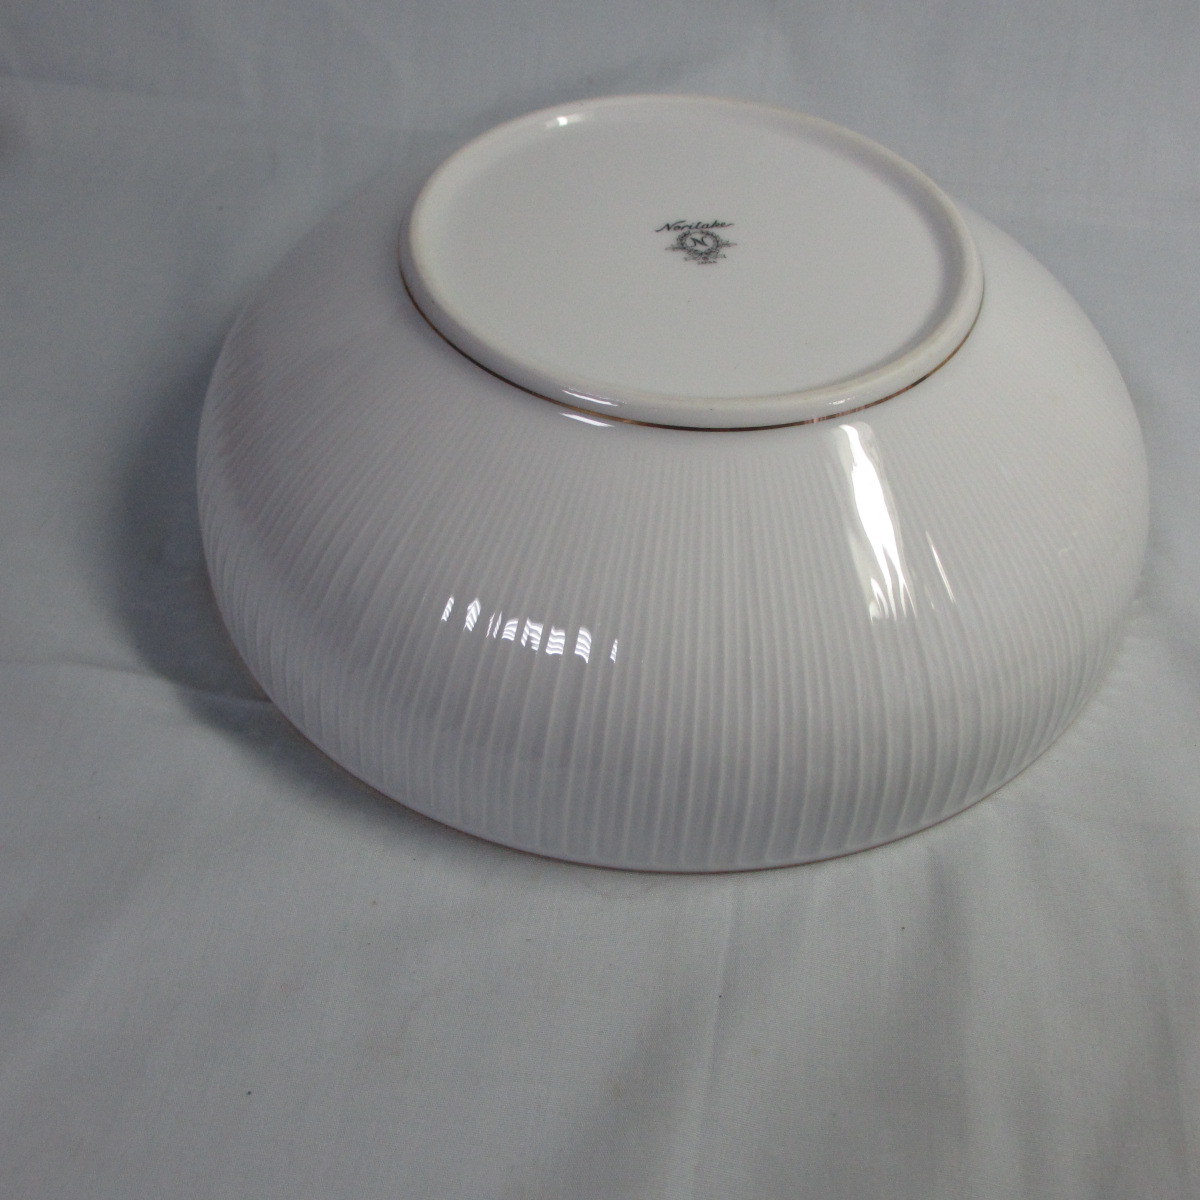  free shipping *rep42h[ Noritake * large bowl ]* white ground ...* flat pot *Noritake.